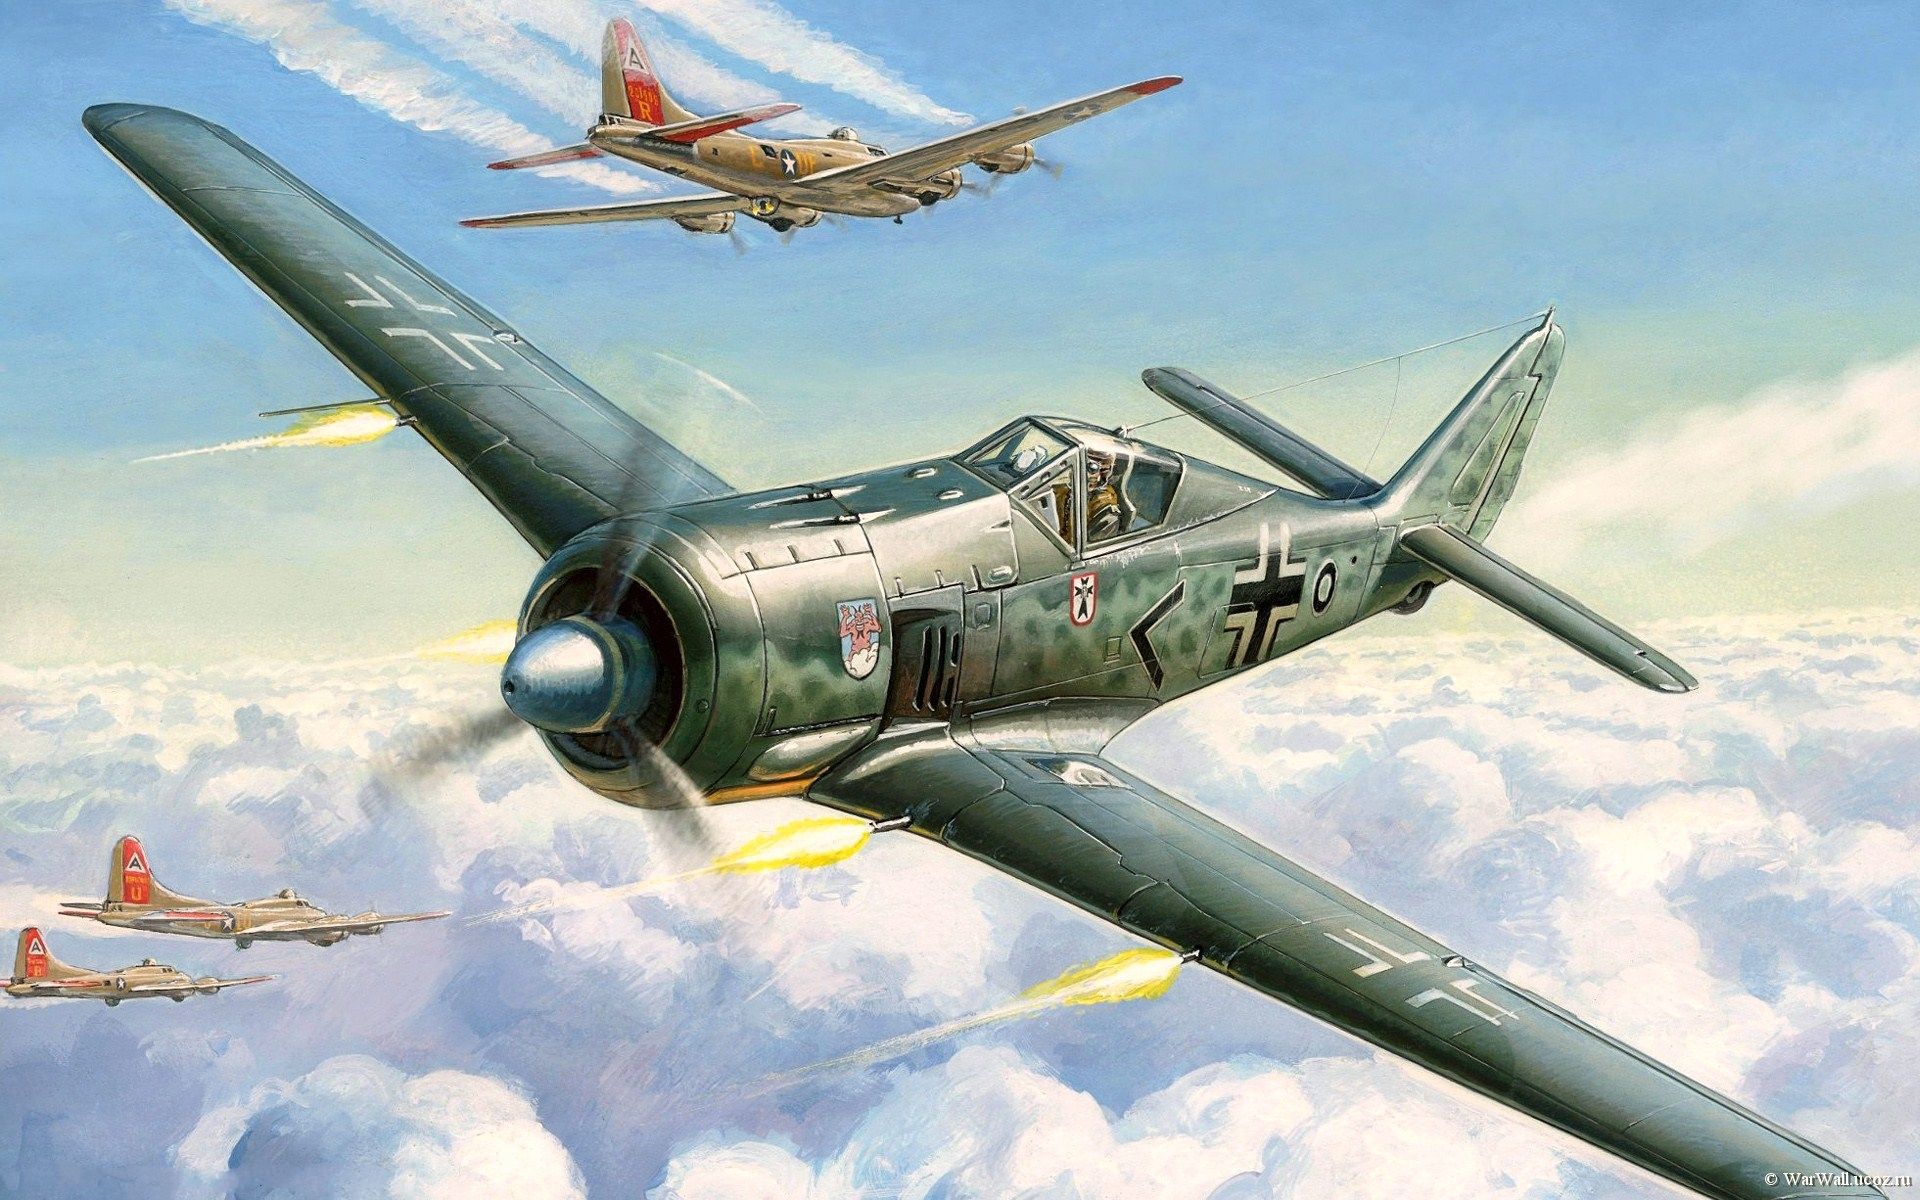 Painting, Aviation, War, Concept Art, Ww2, Art, Combat, - Fw 190 - HD Wallpaper 